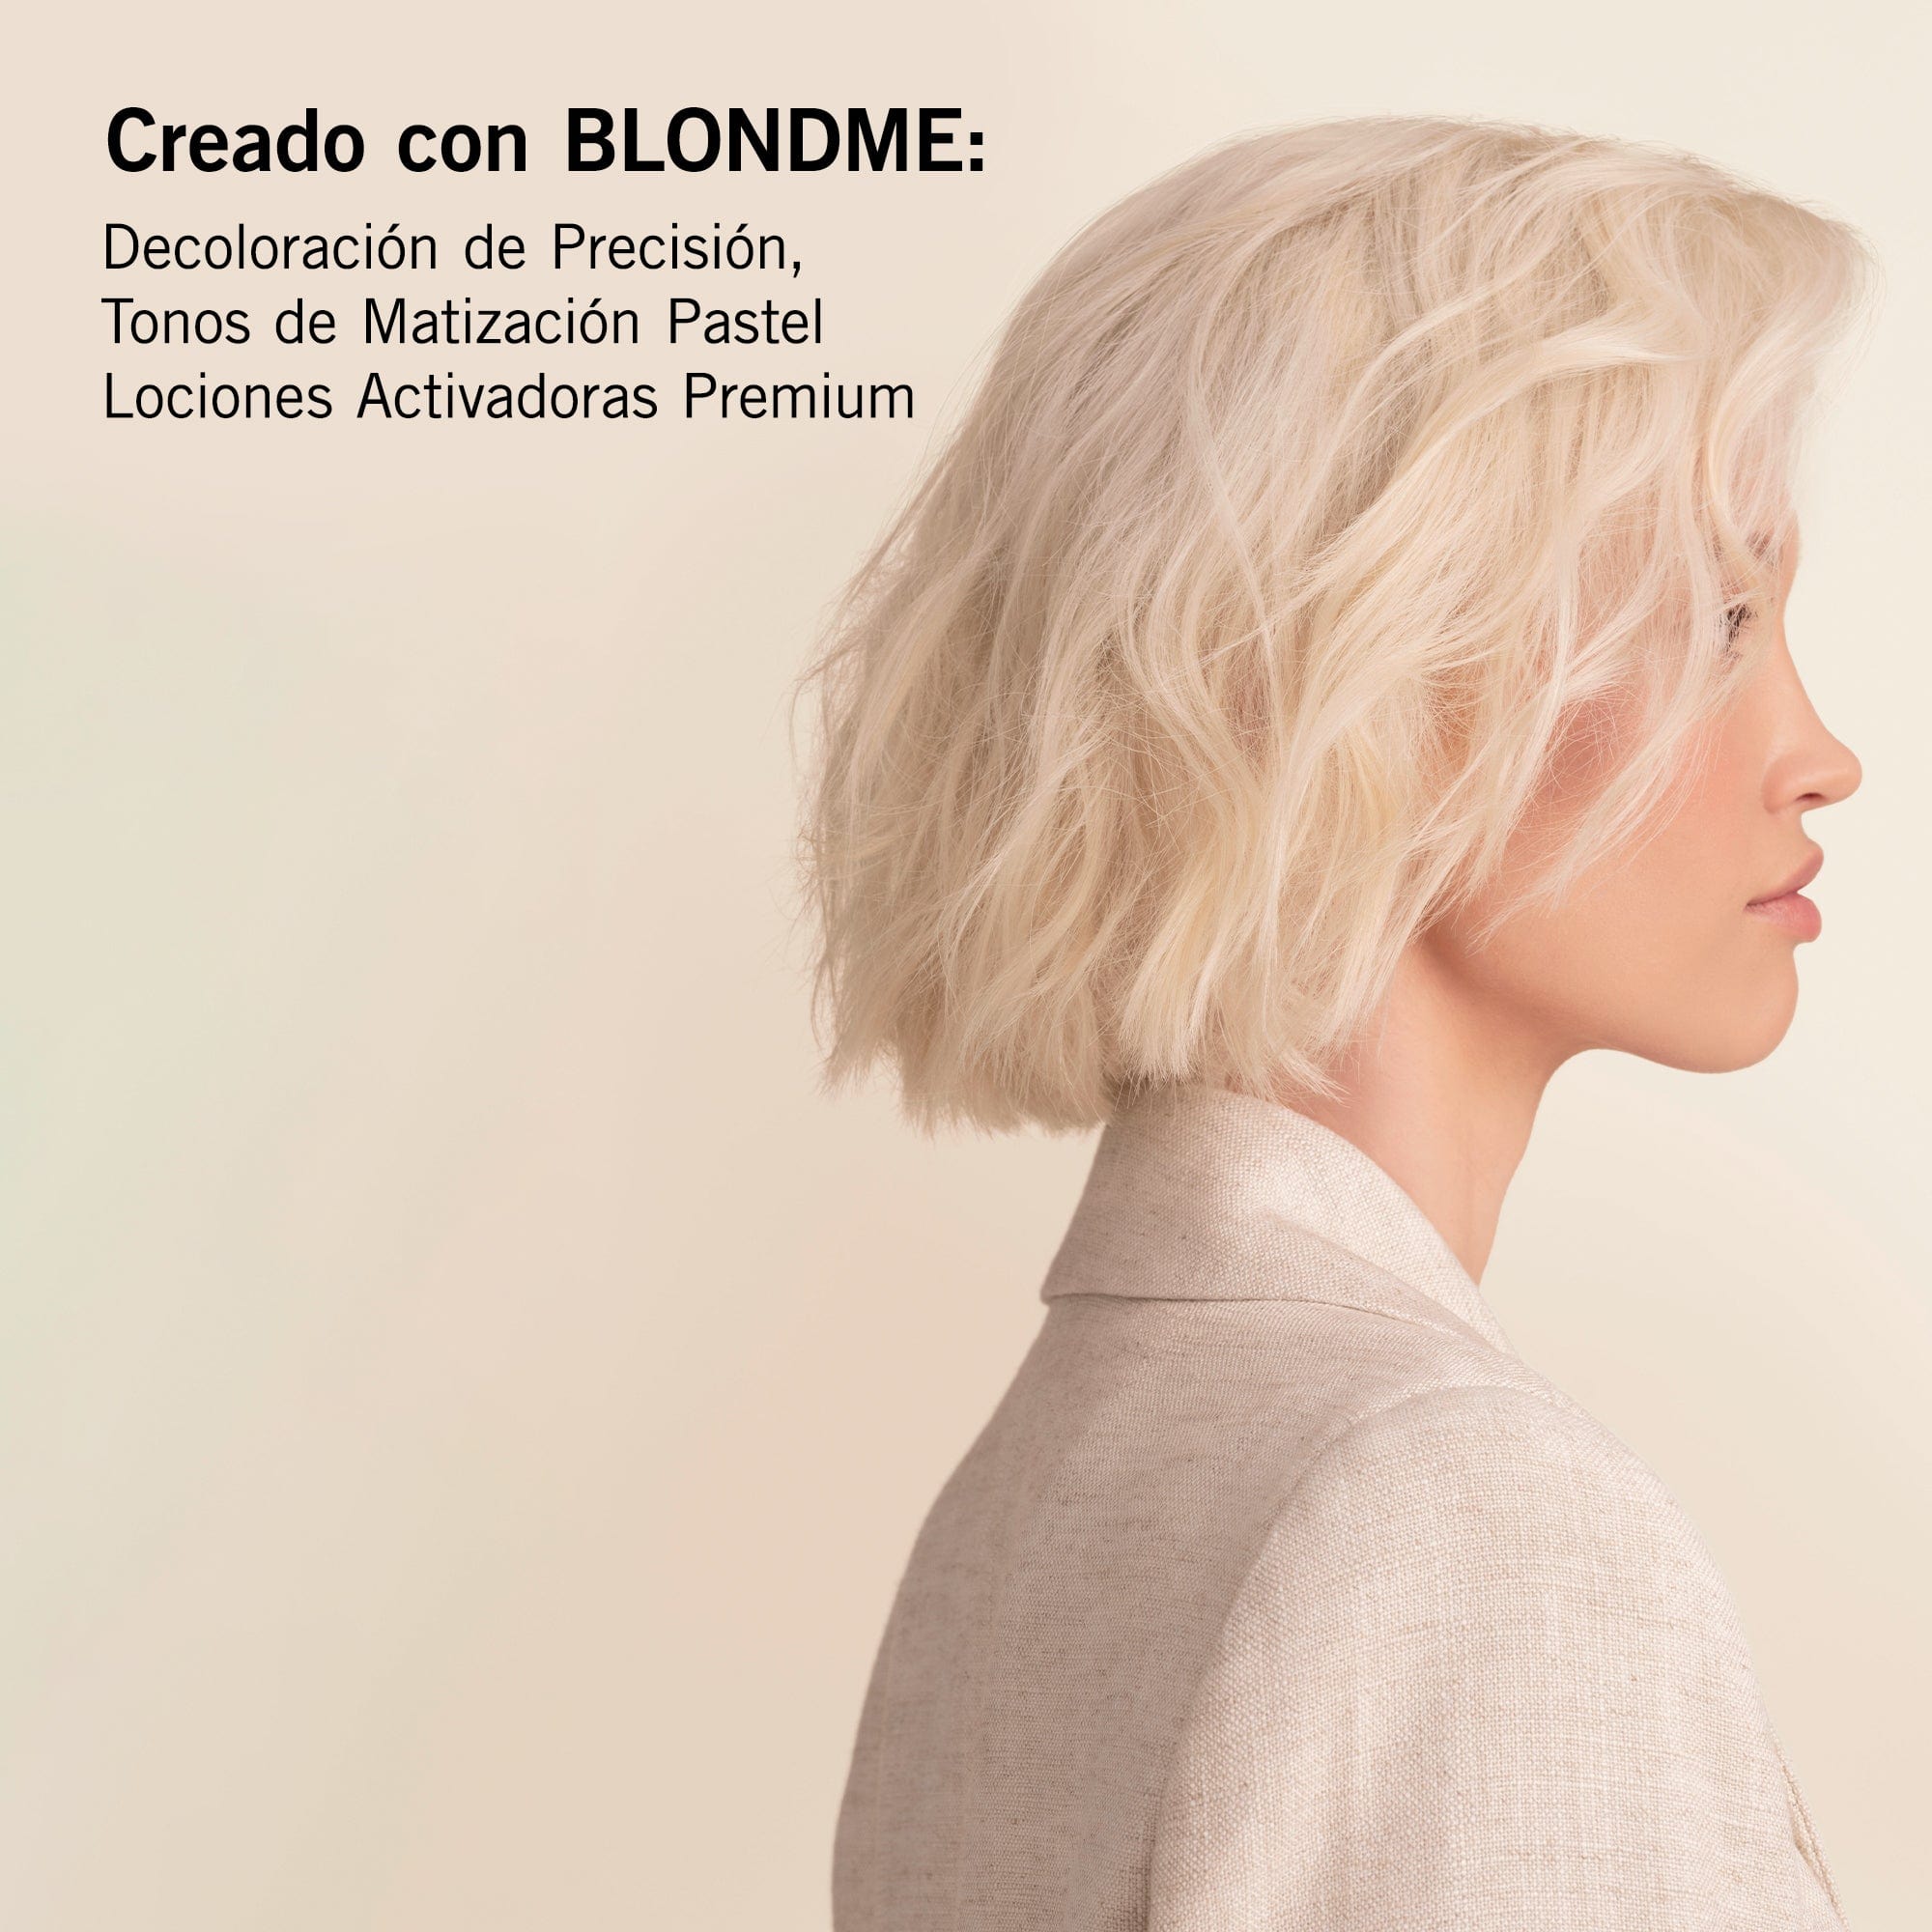 BLONDME Decoloración BLONDME Decoloración de Precisión 350g Roberta Beauty Club Tienda Online Productos de Peluqueria